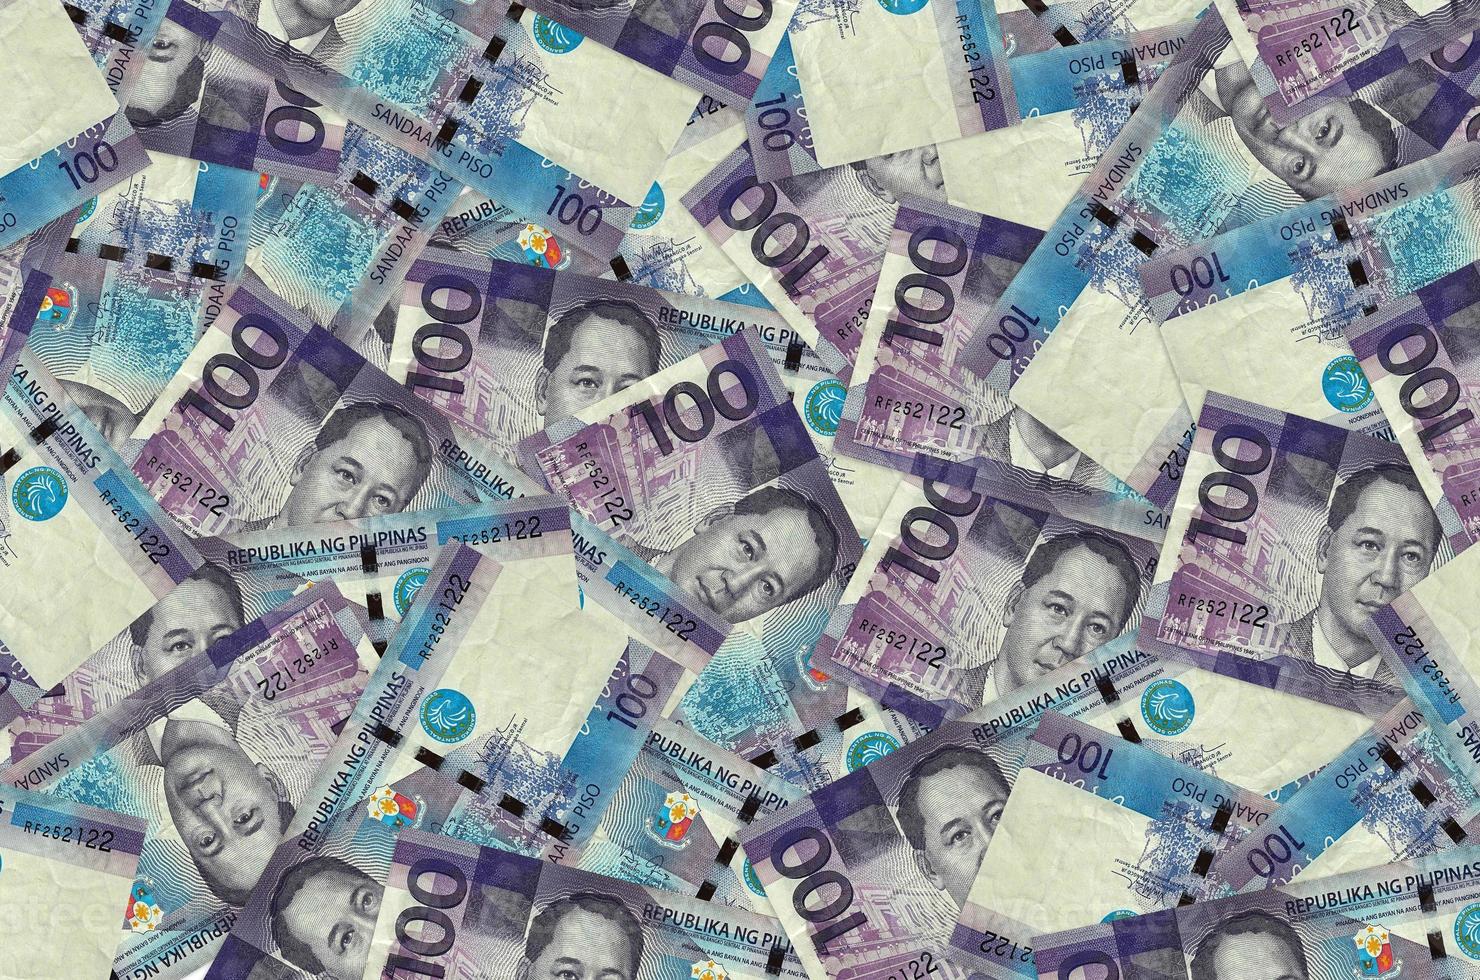 100 philippinische Piso-Scheine liegen in einem großen Stapel. konzeptioneller hintergrund des reichen lebens foto